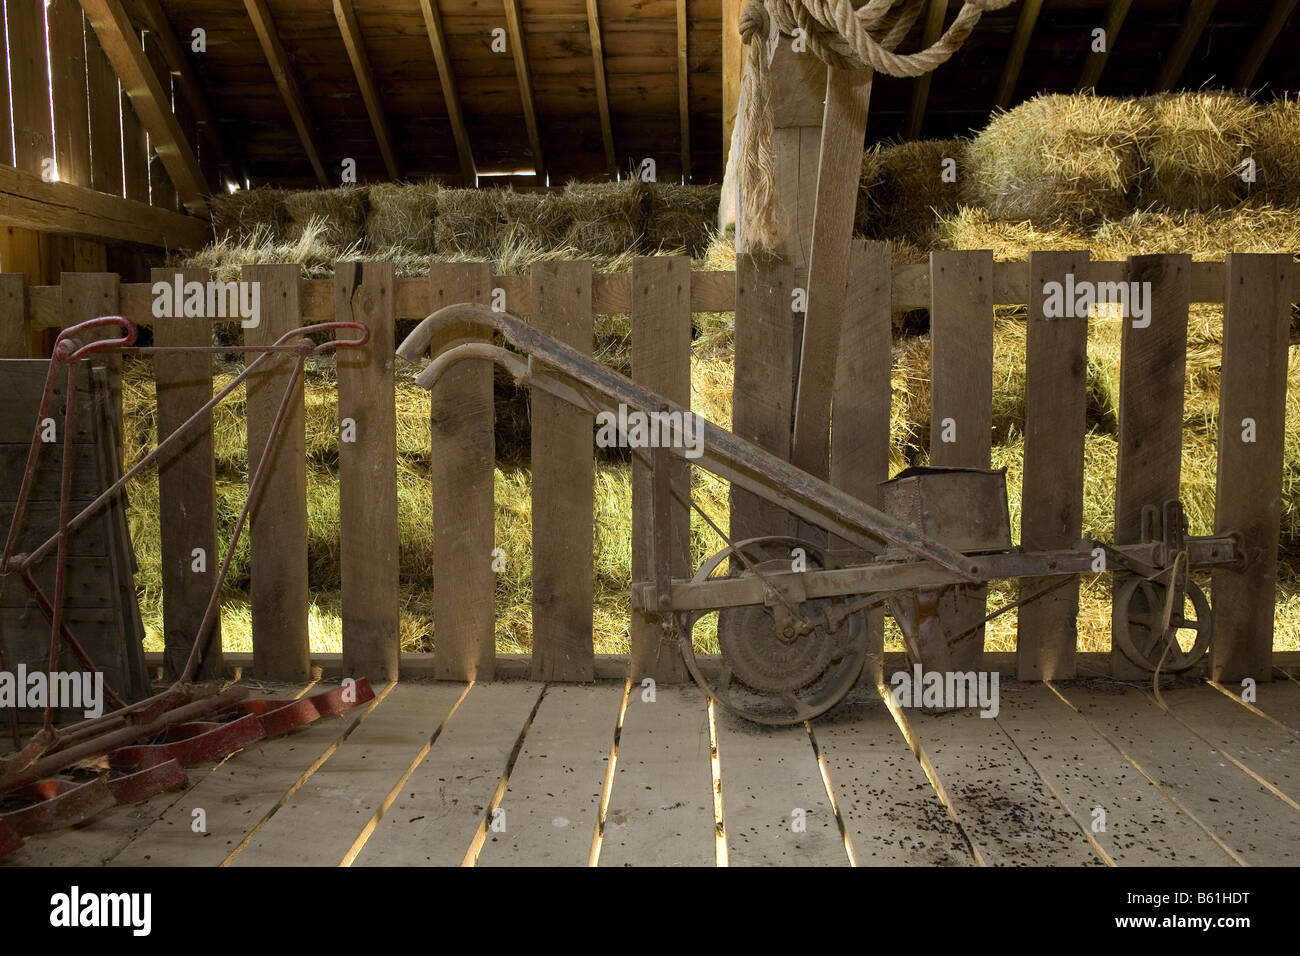 Vecchi attrezzi agricoli a memorizzare in un fienile in un parco della città. Foto Stock